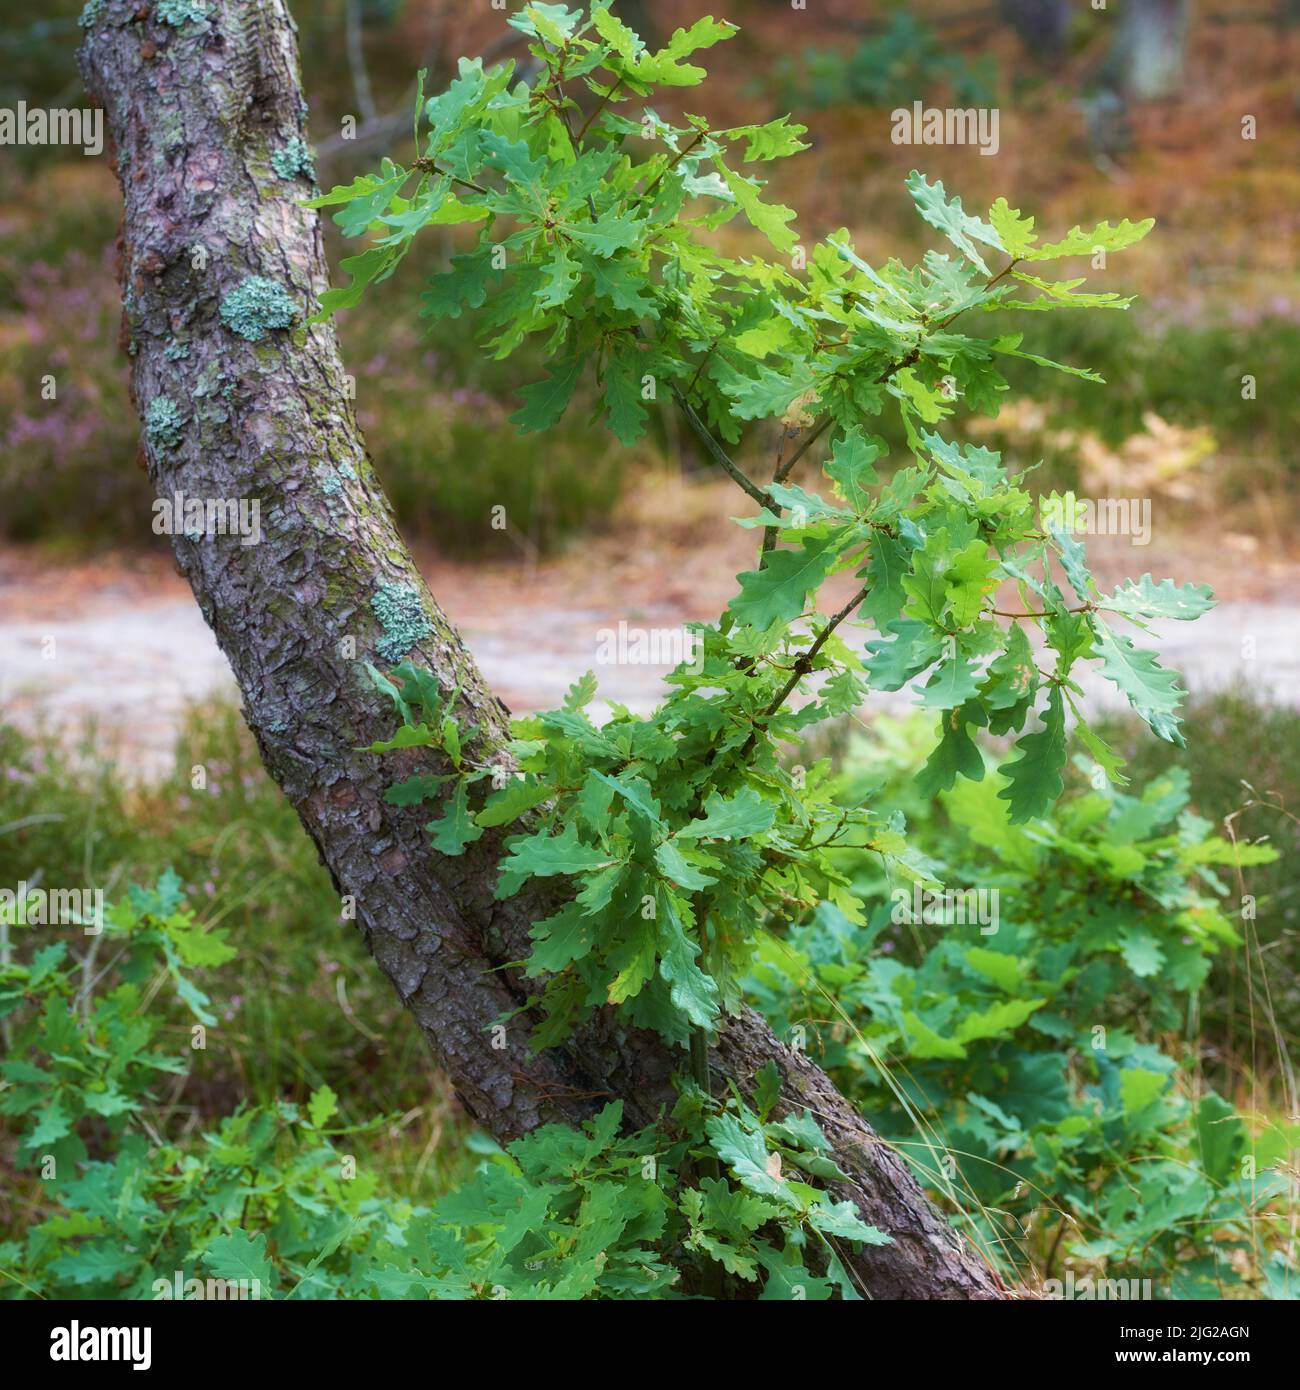 Primo piano di foglie verdi che crescono alla base di una quercia bianca nella foresta. Vegetazione lussureggiante che cresce nei boschi fitti e fiorenti. Habitat naturale Foto Stock